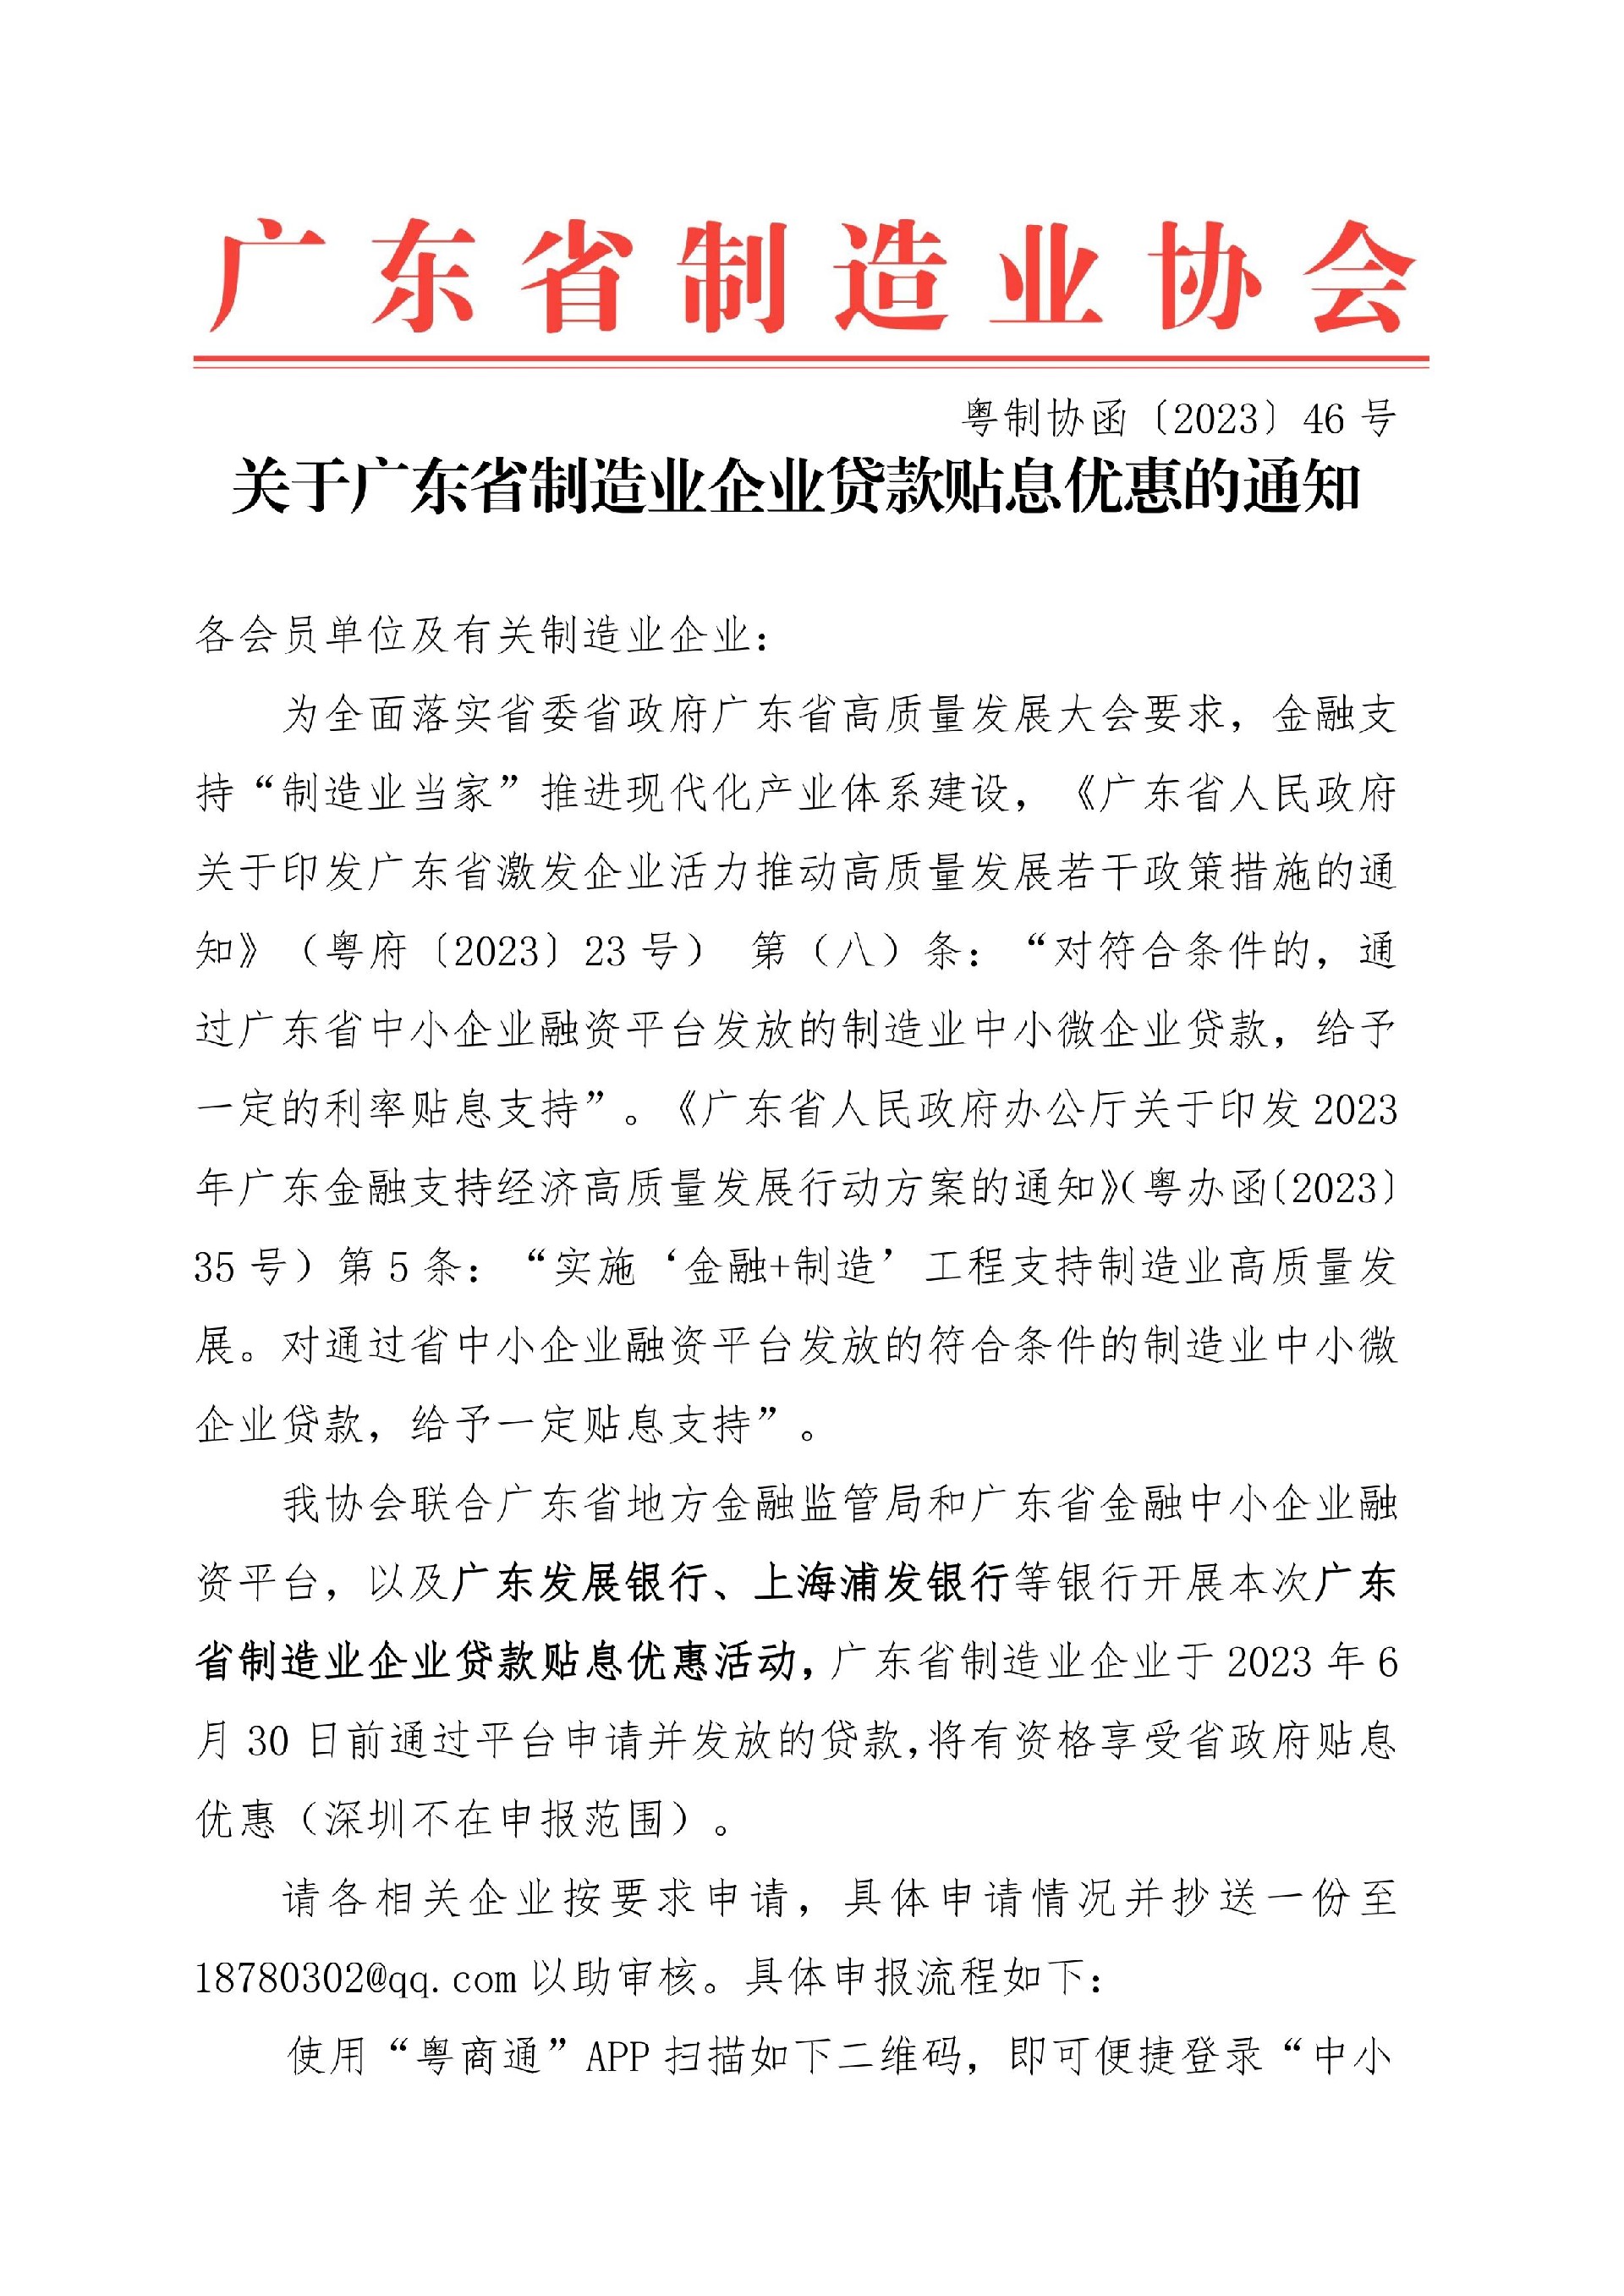 46号函-关于广东省制造业企业贷款贴息优惠的通知